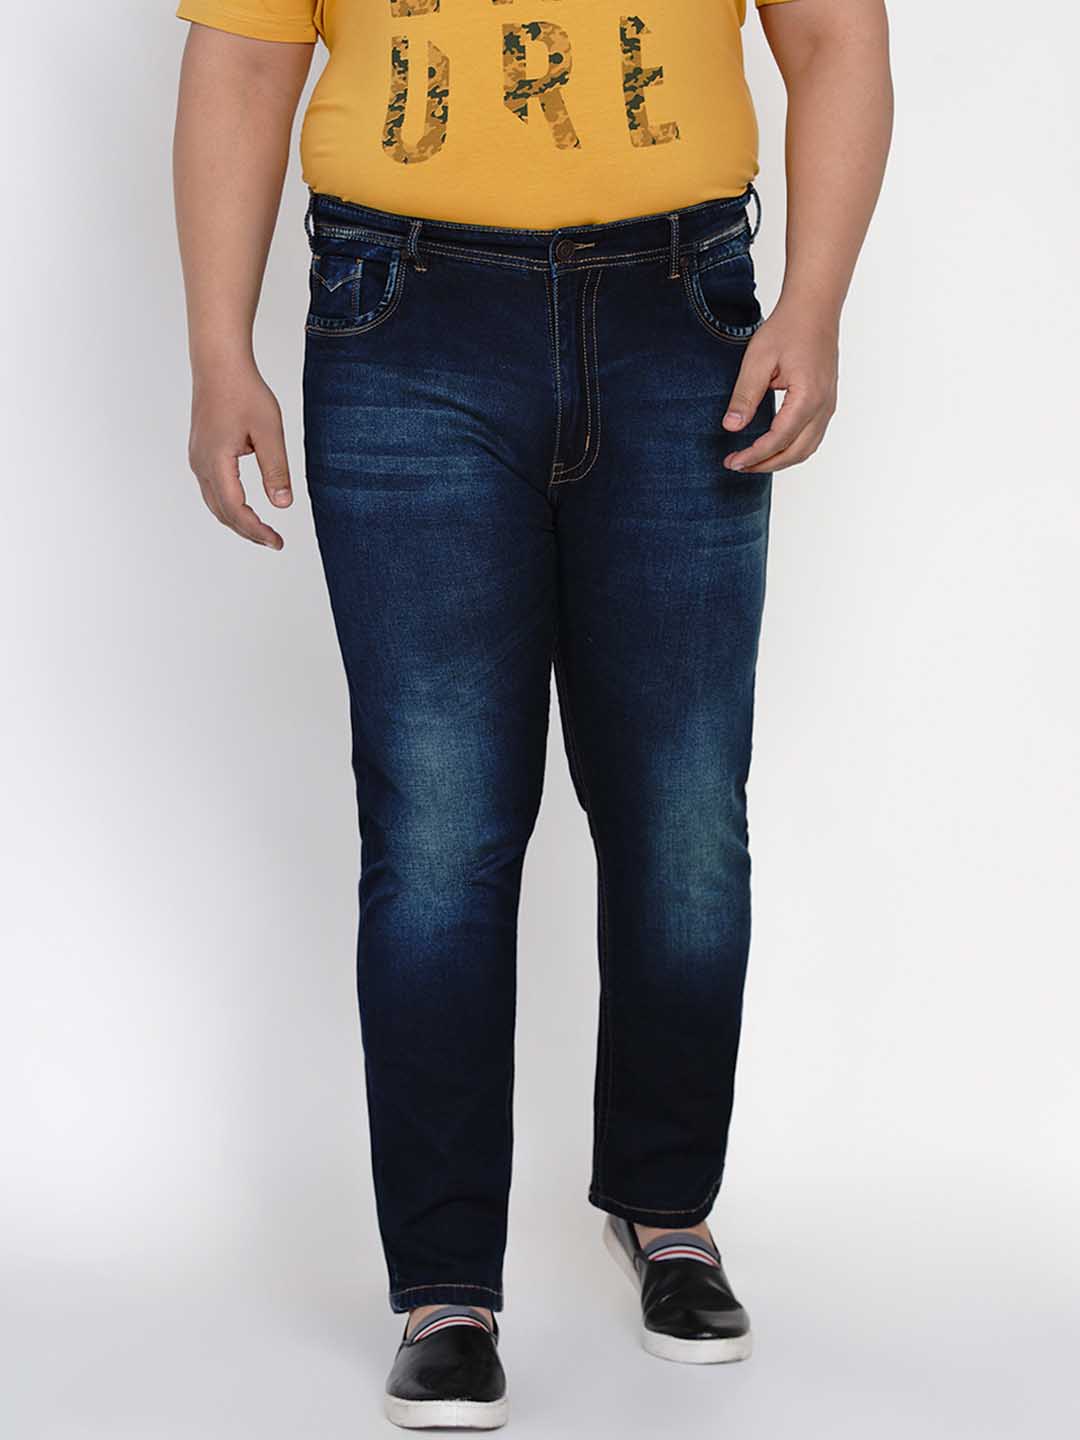 bottomwear/jeans/JPJ12113/jpj12113-1.jpg